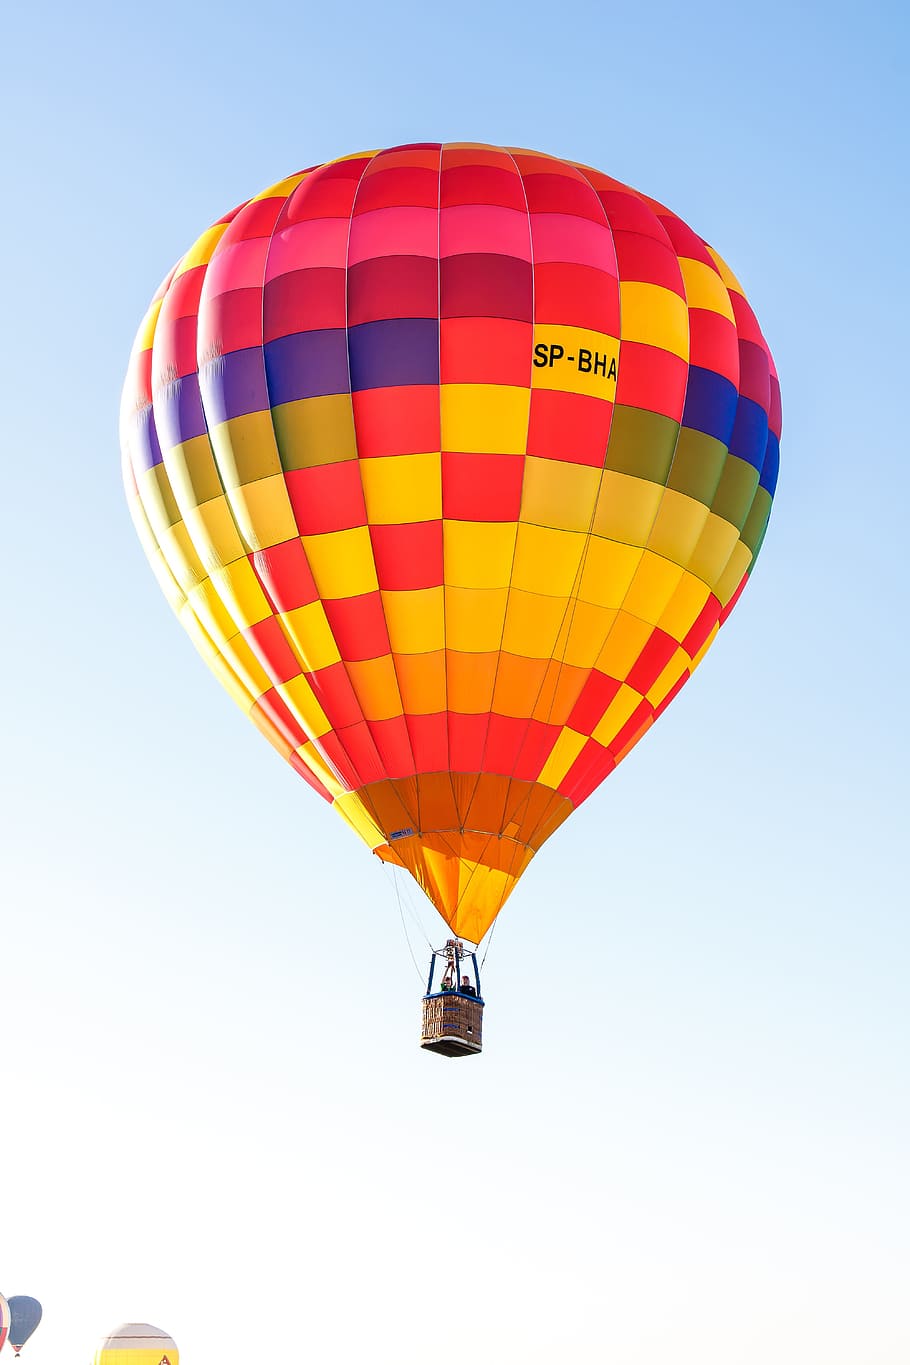 Balon, Terbang, Berwarna-warni, Udara, Langit, mengangkat, mengapung, perjalanan balon udara panas, balon udara panas, multi warna